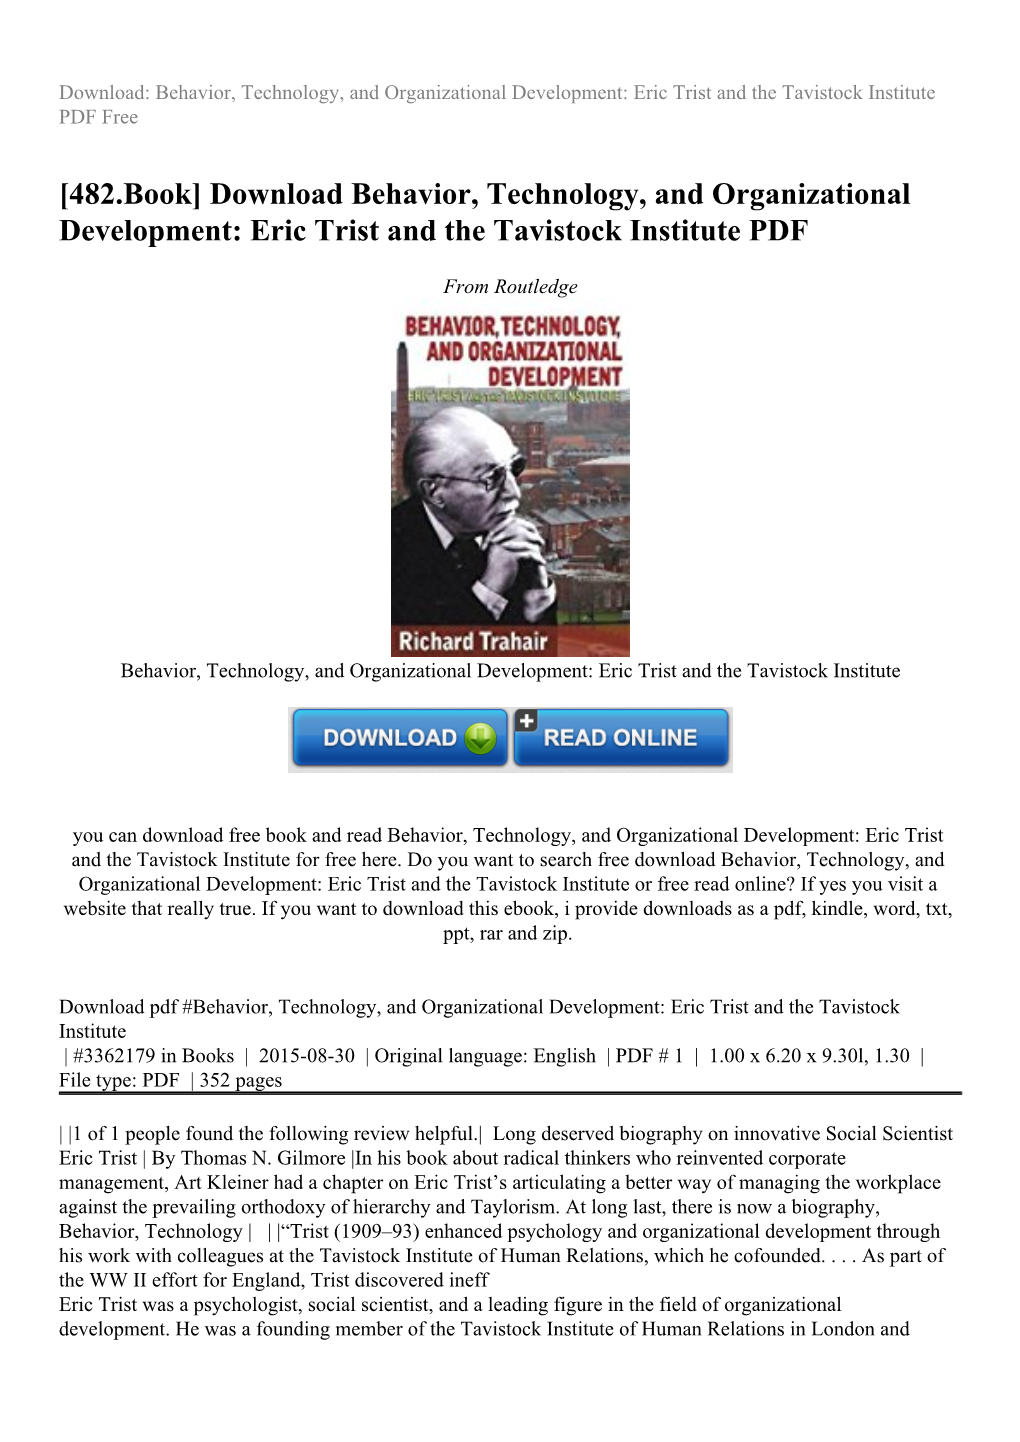 Eric Trist and the Tavistock Institute PDF Free